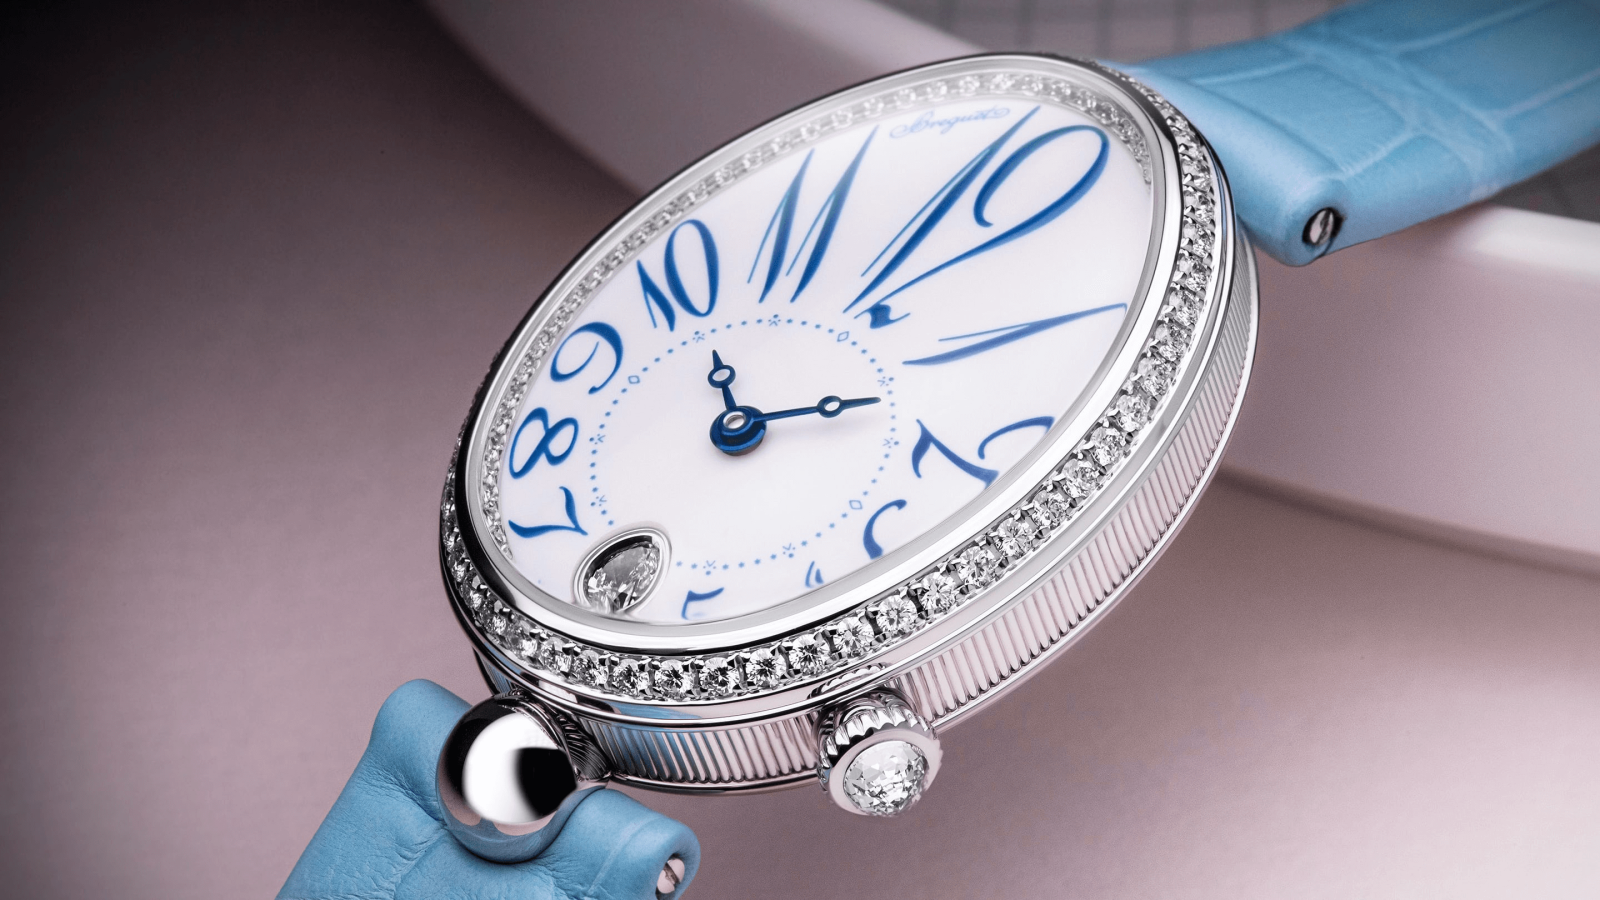 đồng hồ nữ mặt số oval breguet reine de naples 8918 năm 2020